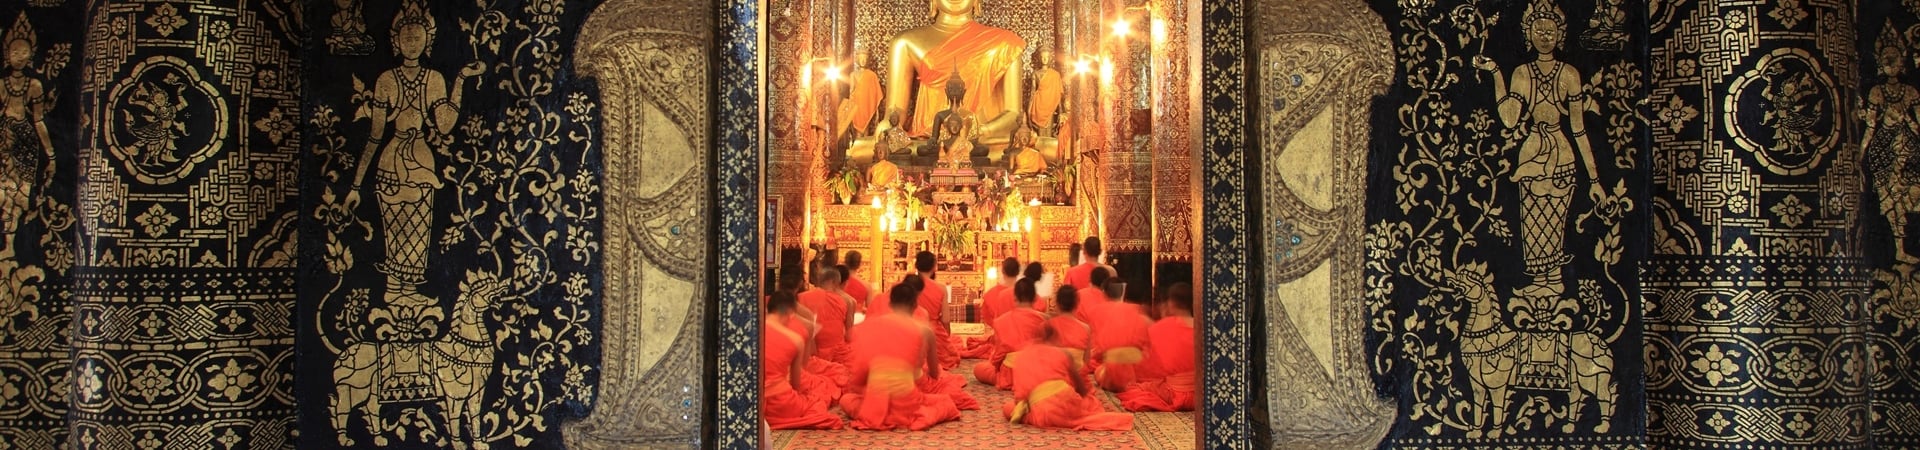 Enchanting Luang Prabang